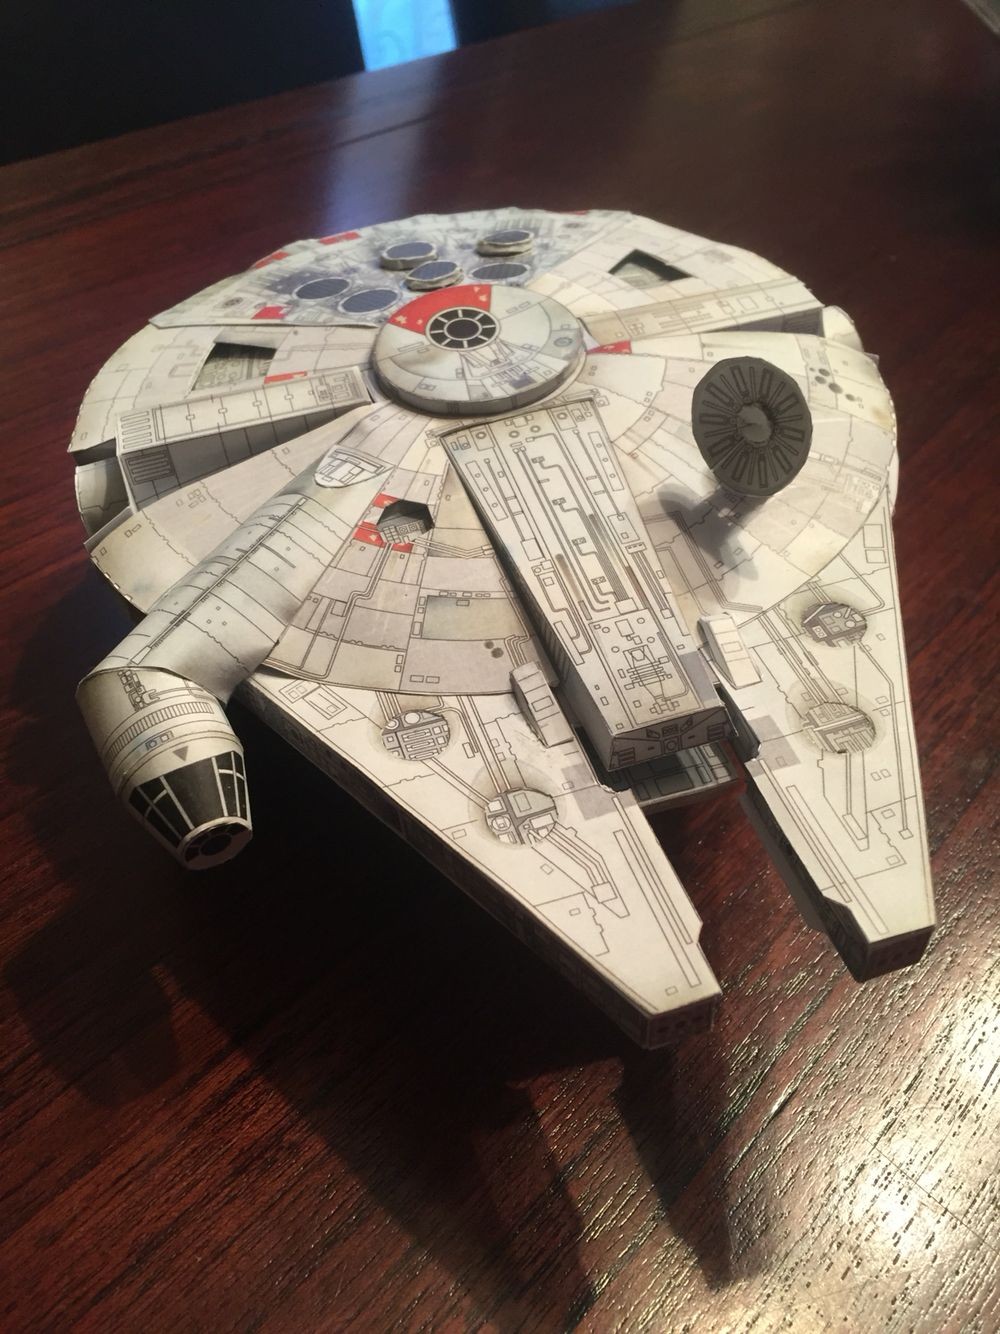 Space Papercraft Millennium Falcon Star Wars ãã¬ãã¢ã ã ãã¡ã ã³ã³